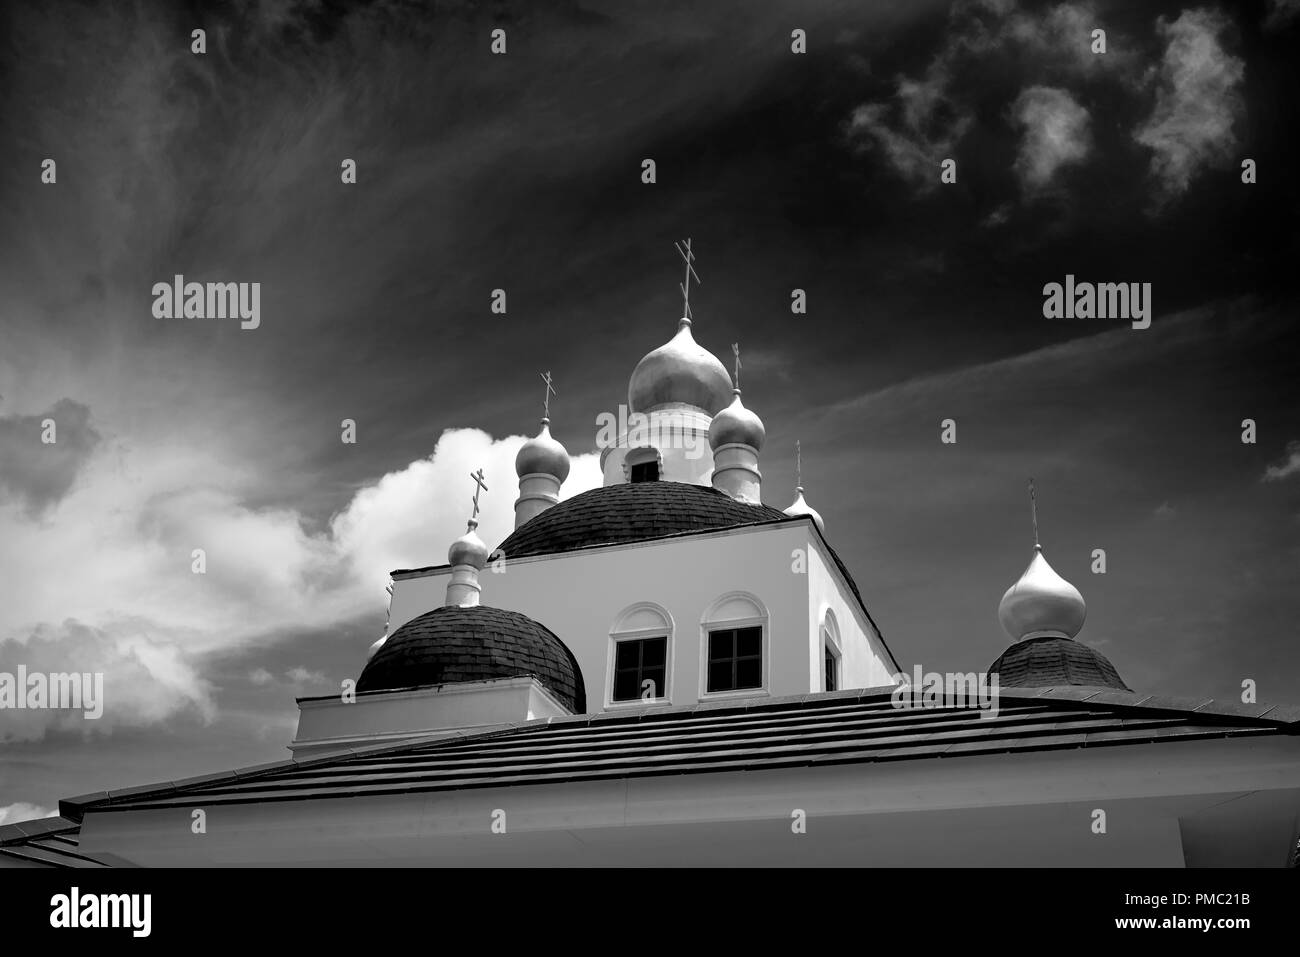 Photographie noir et blanc de l'Église orthodoxe russe, Pattaya Thaïlande Asie du Sud-est Banque D'Images